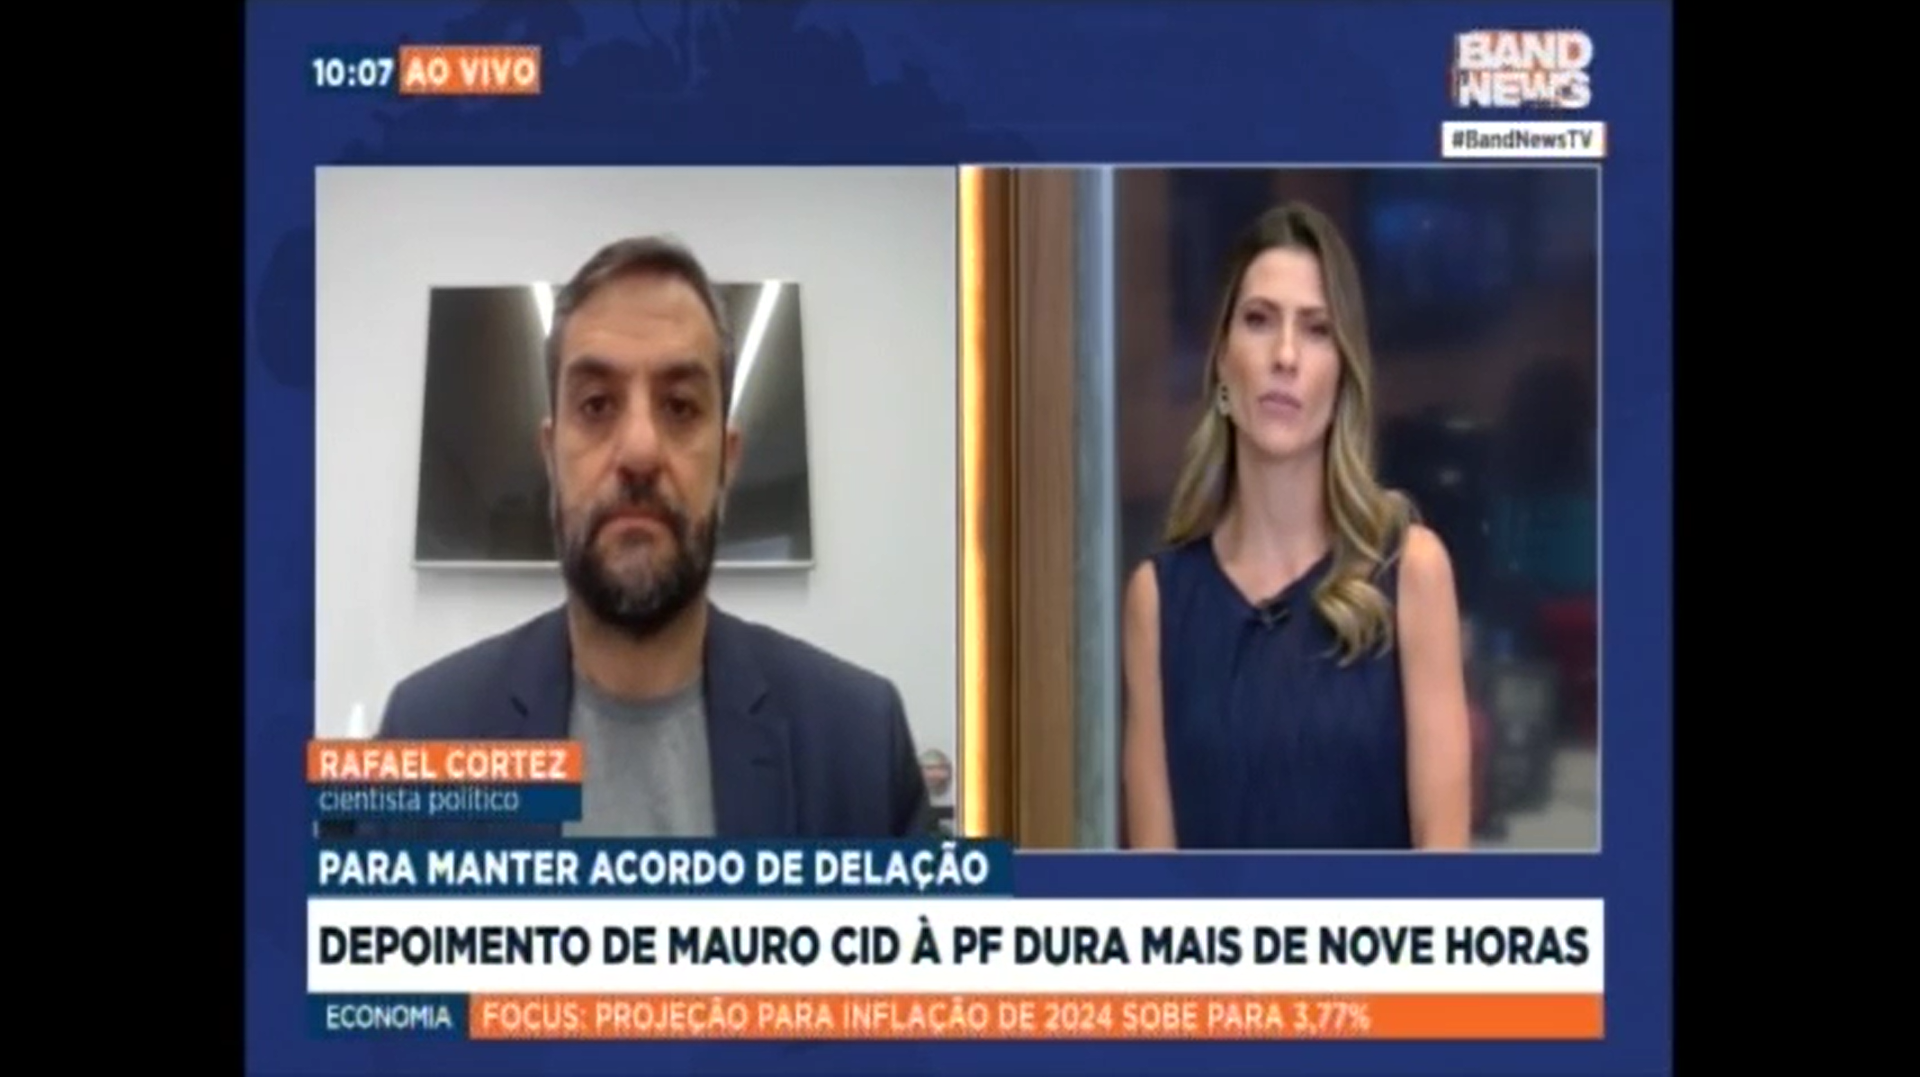 Rafael Cortez comenta sobre depoimento de Mauro Cid que afirma não ter participado de reunião sobre o golpe - TV BandNews